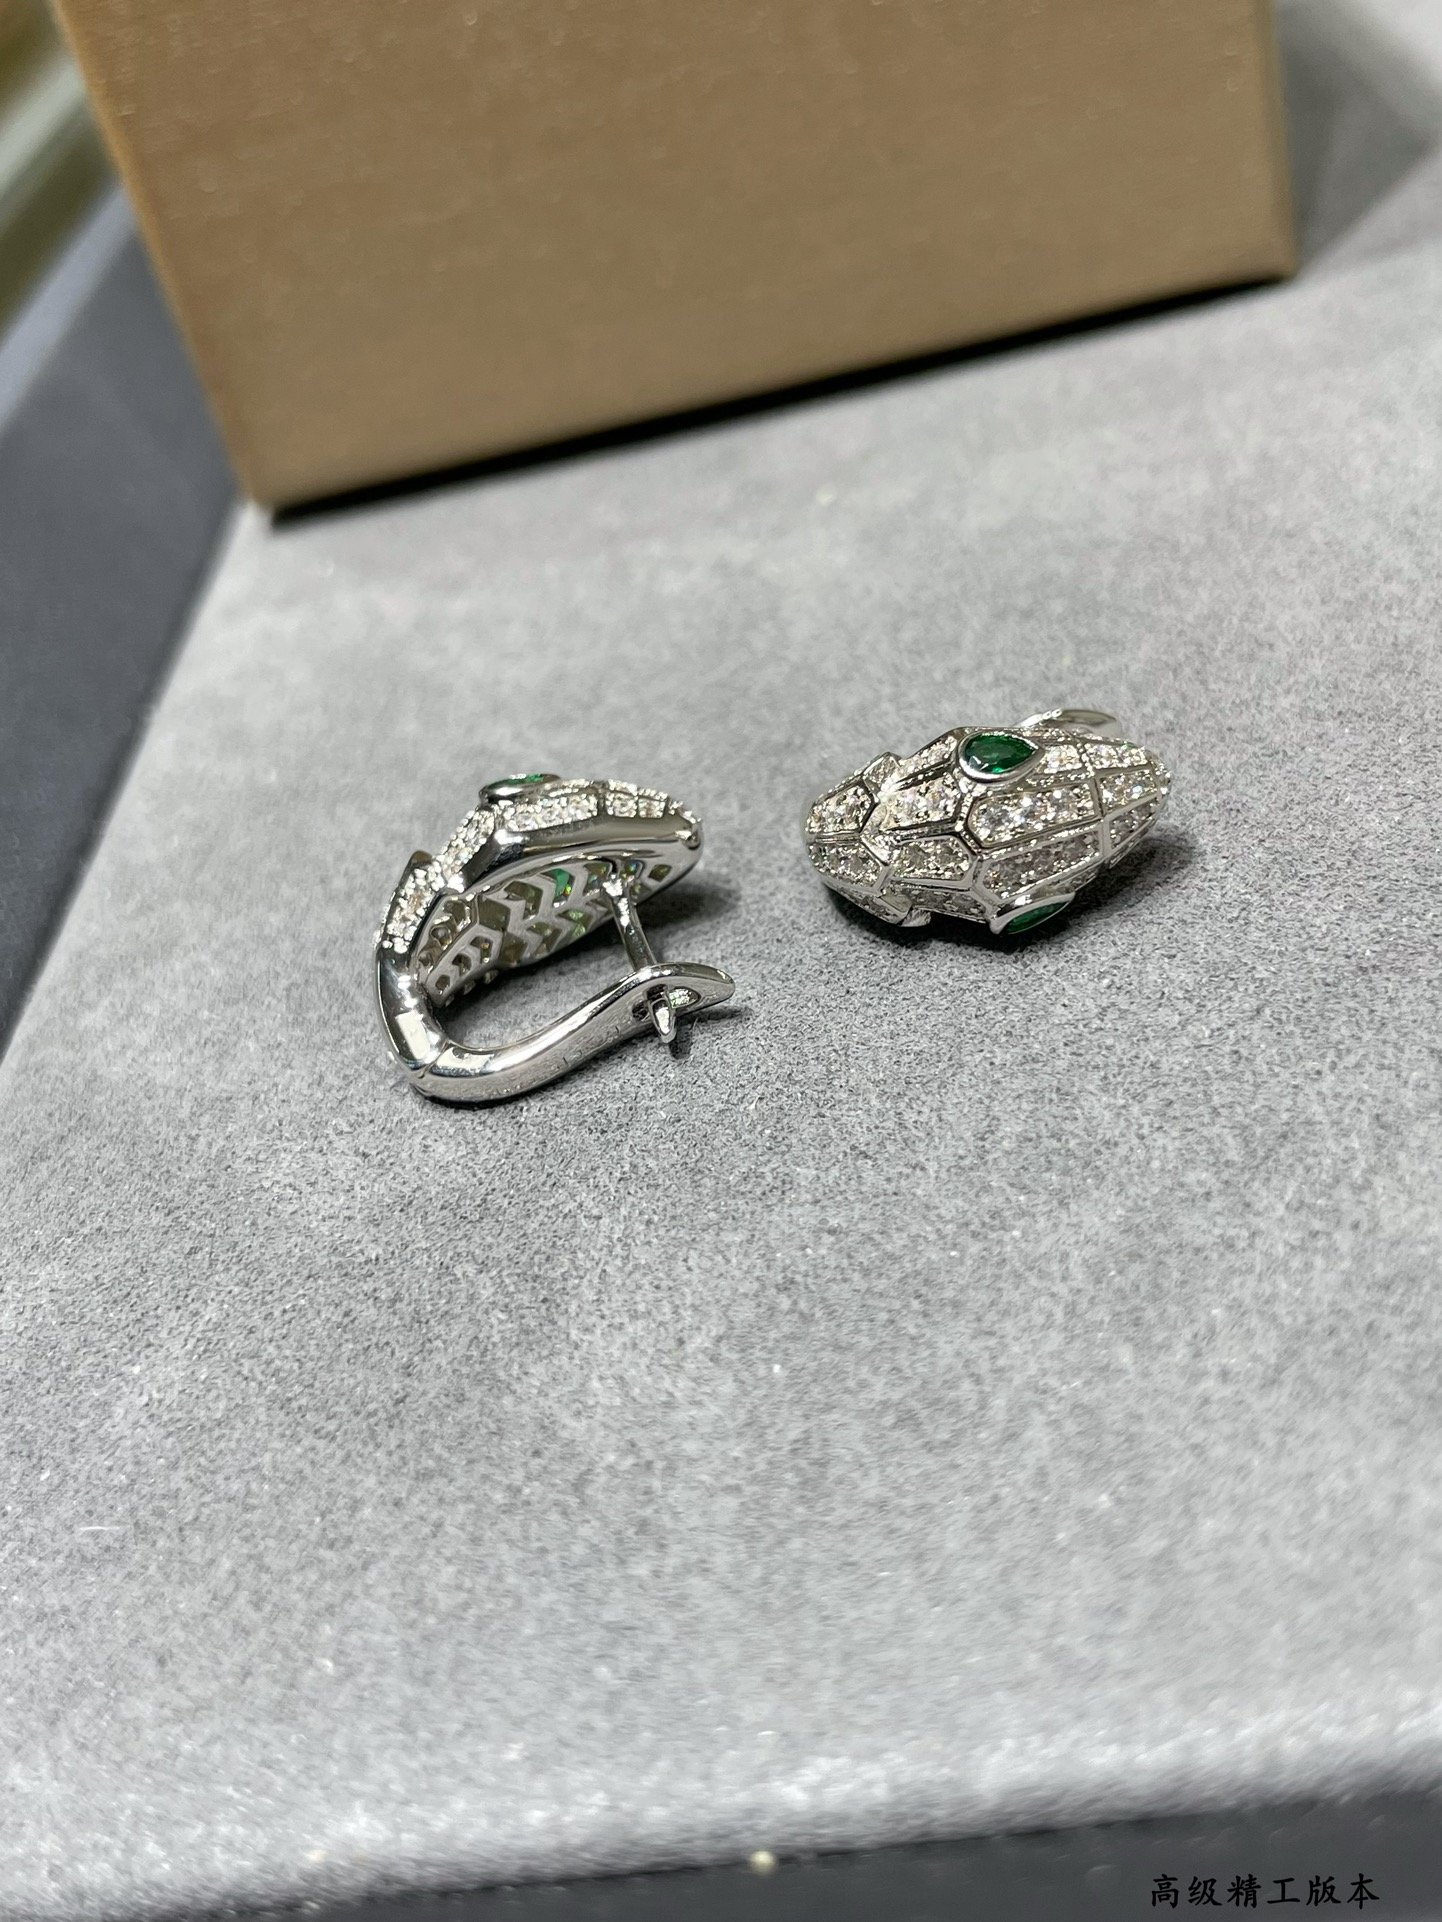 亚金宝格丽多多蛇耳环镶嵌祖母绿饰以密镶钻石蛇作为性感与美丽的象征这种图腾可追溯到古希腊和罗马神话象征智慧